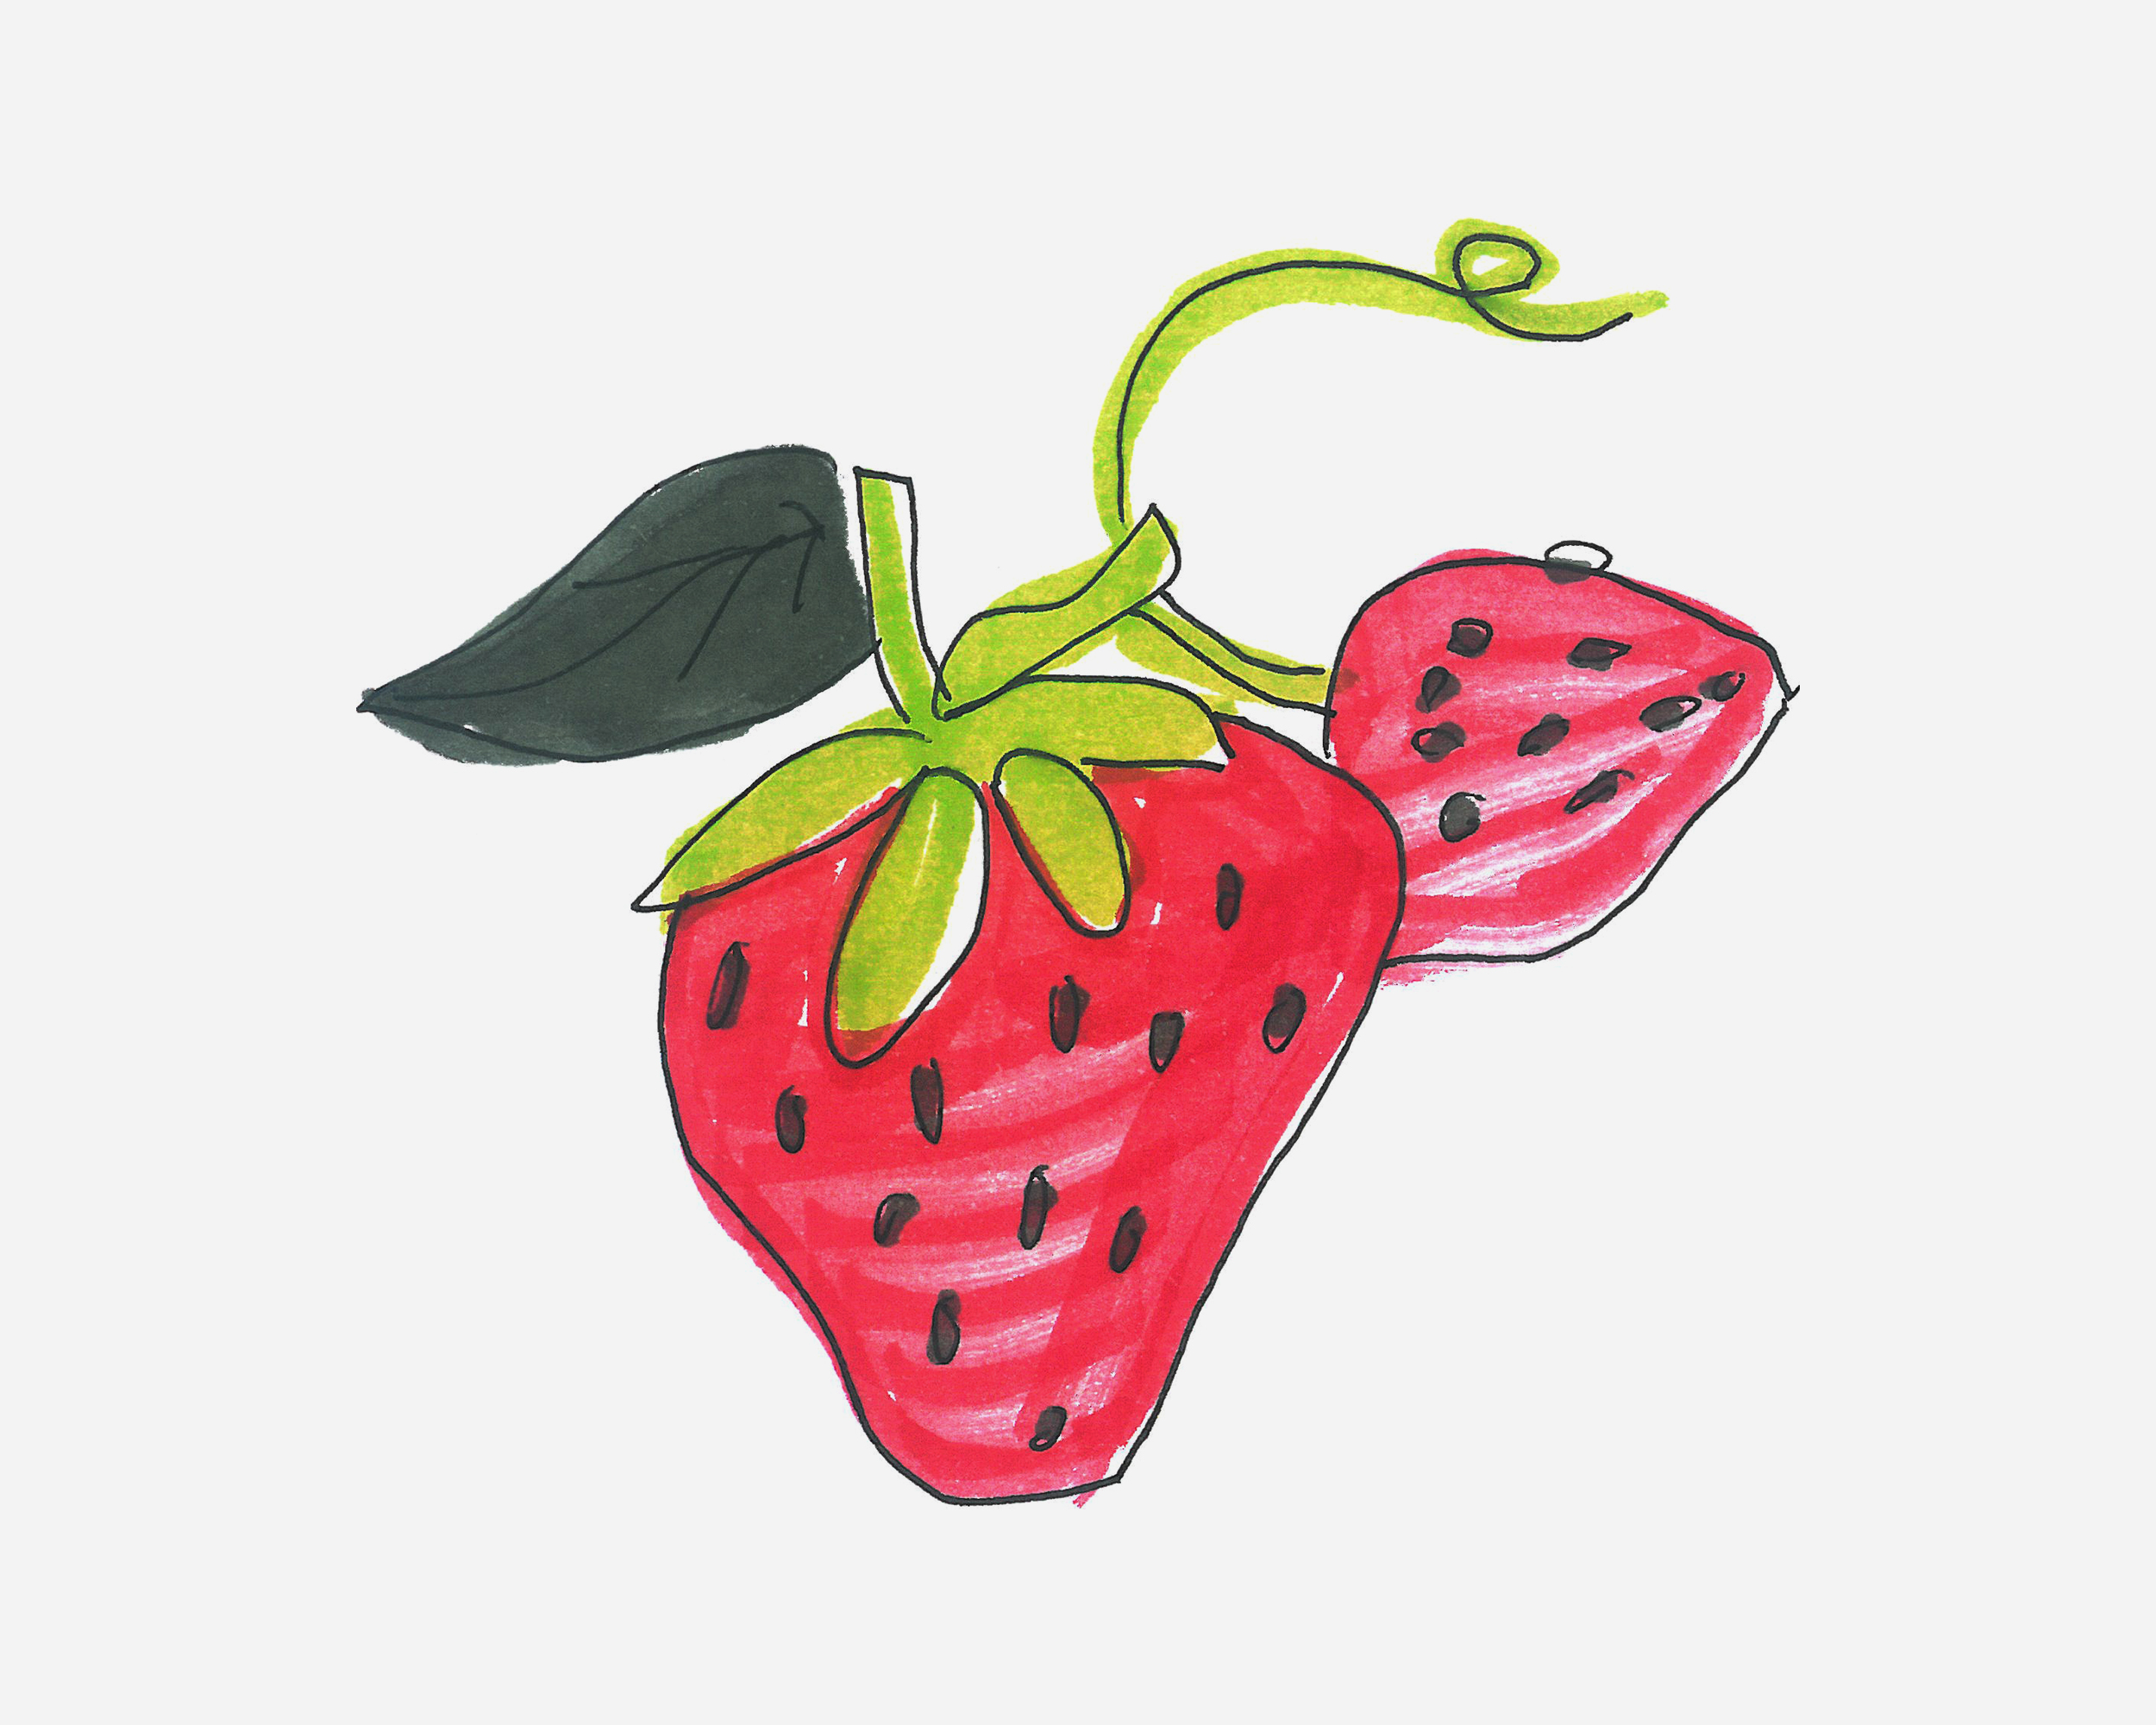 3-6岁简笔画教程 小草莓的画法图解教程（四宫格漫画简笔画图片大全） - 有点网 - 好手艺